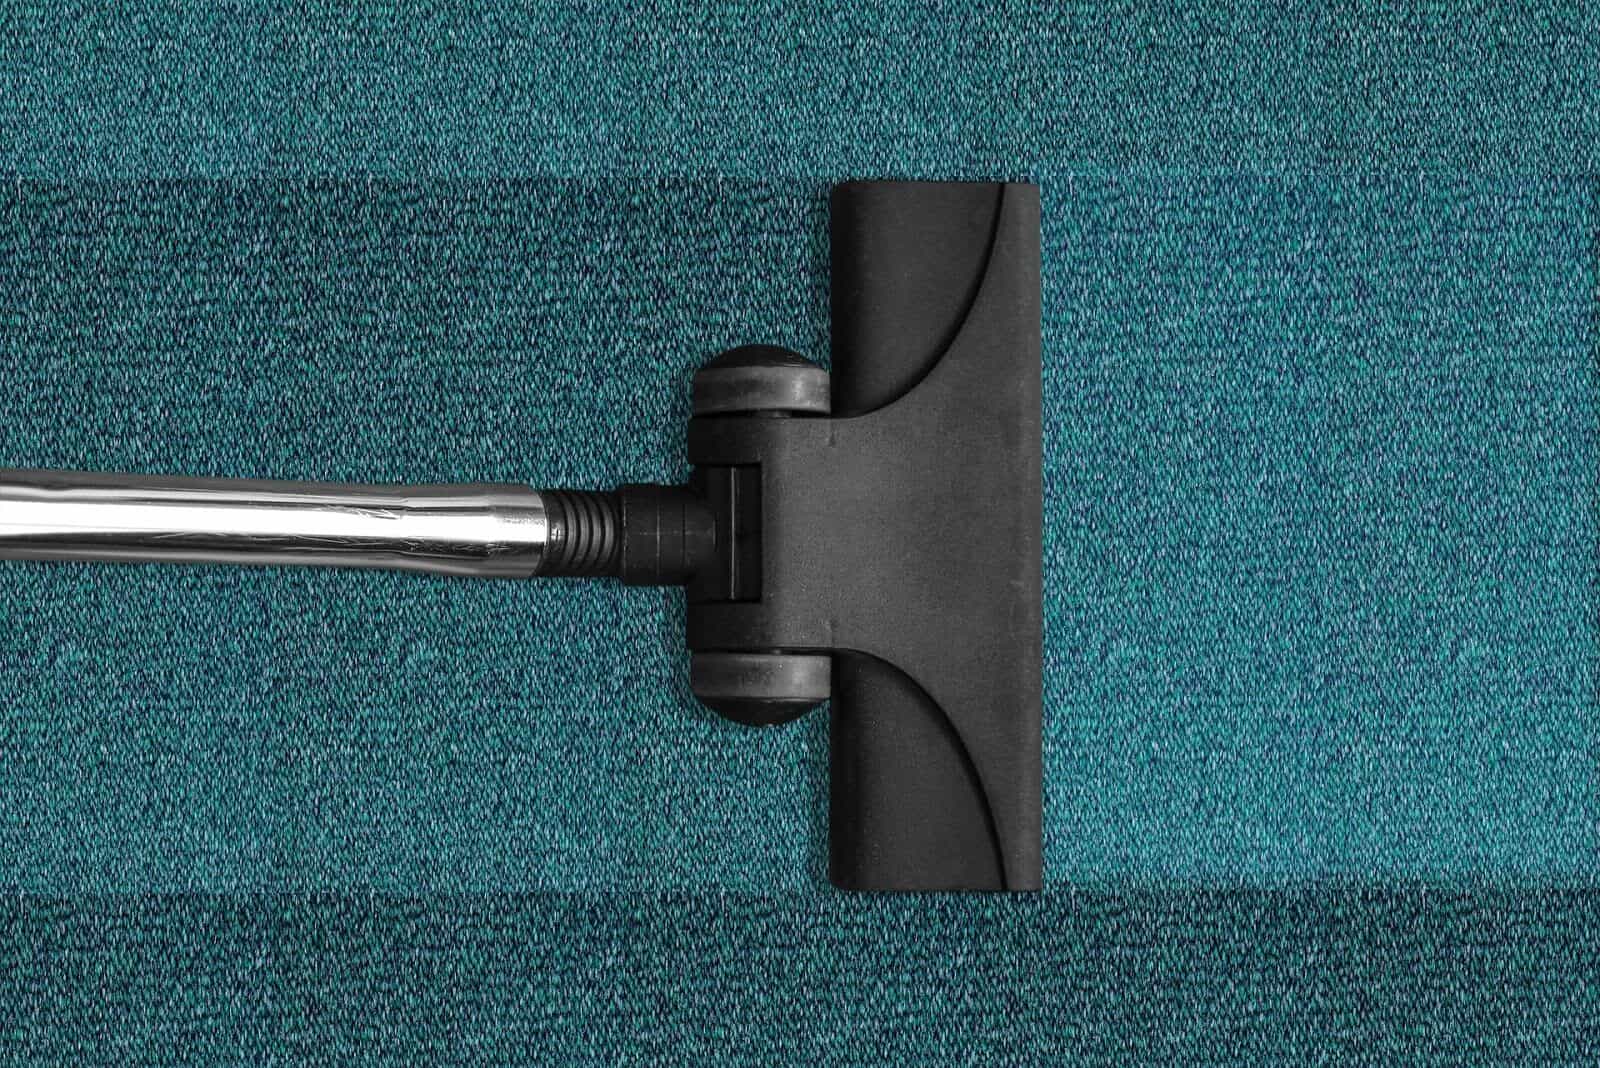 Vacuum cleaner on blue carpet